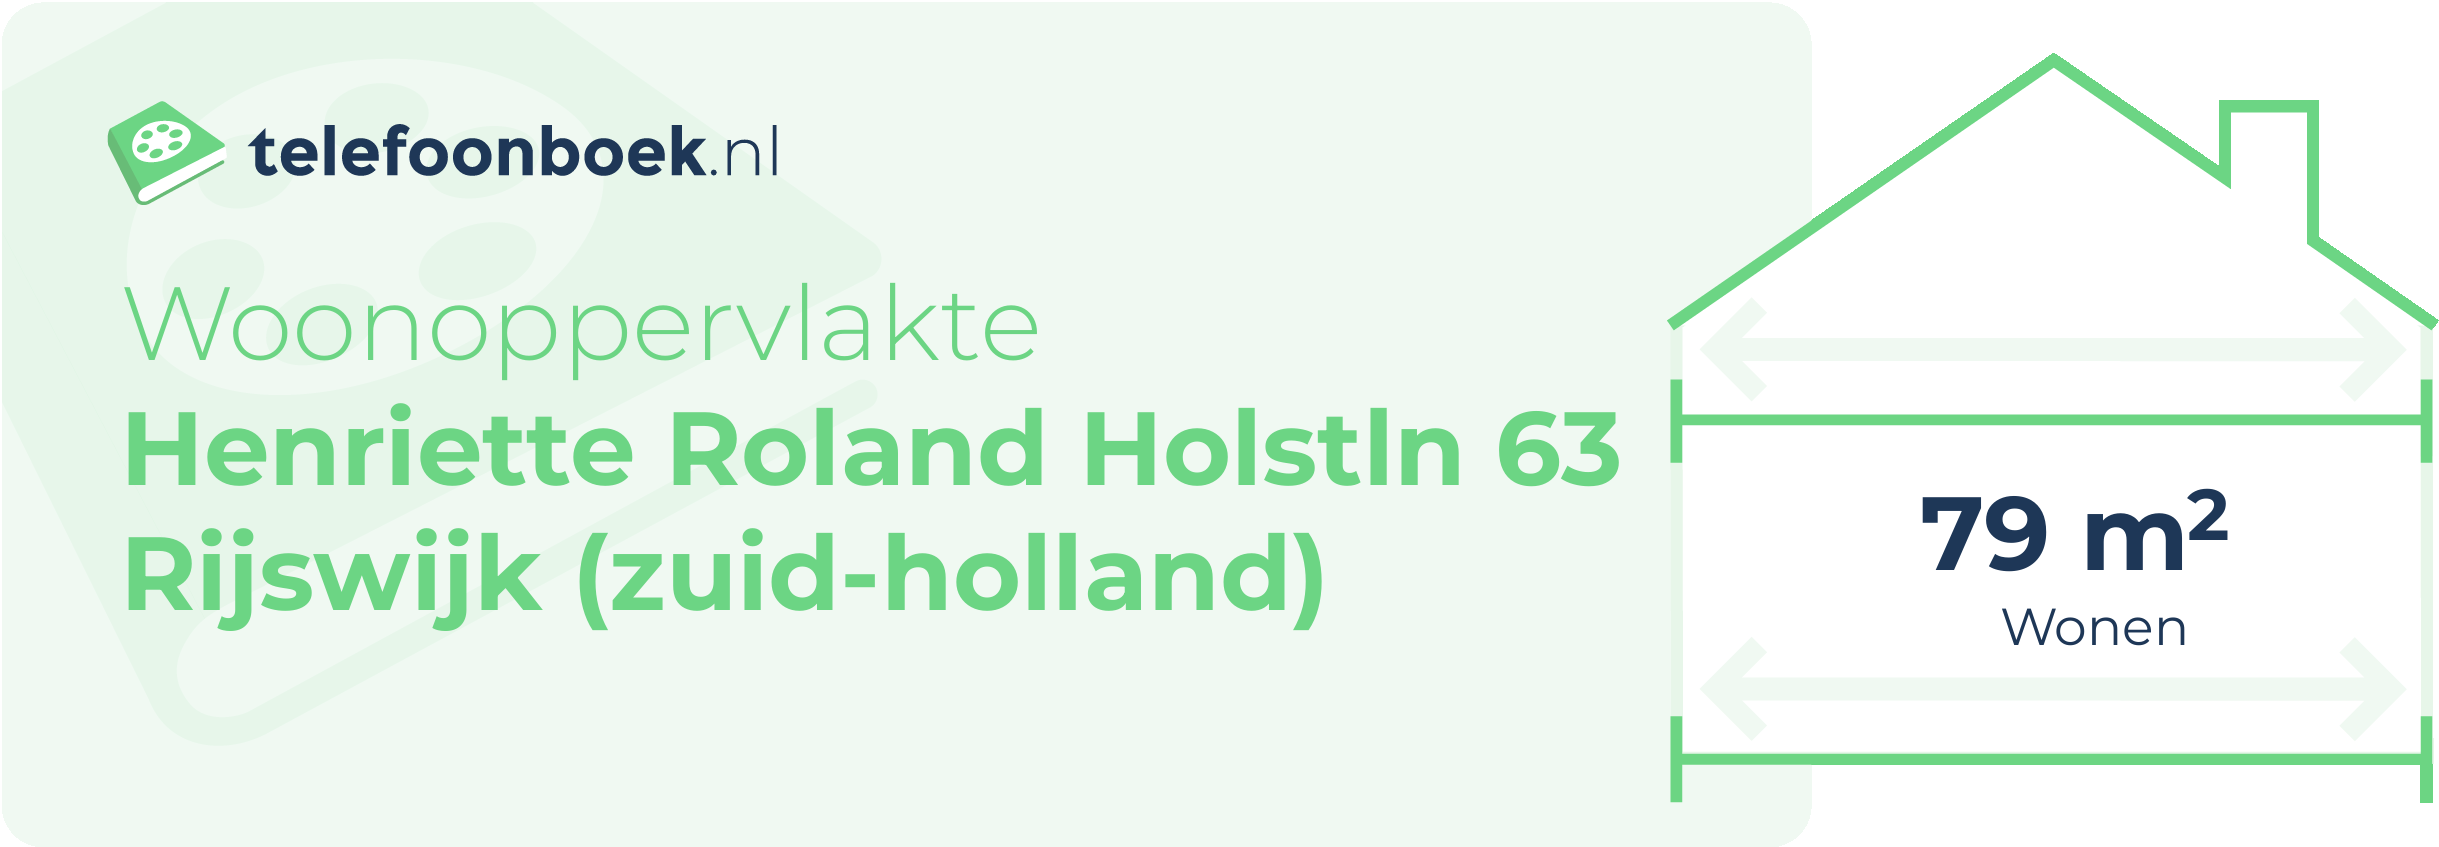 Woonoppervlakte Henriette Roland Holstln 63 Rijswijk (Zuid-Holland)